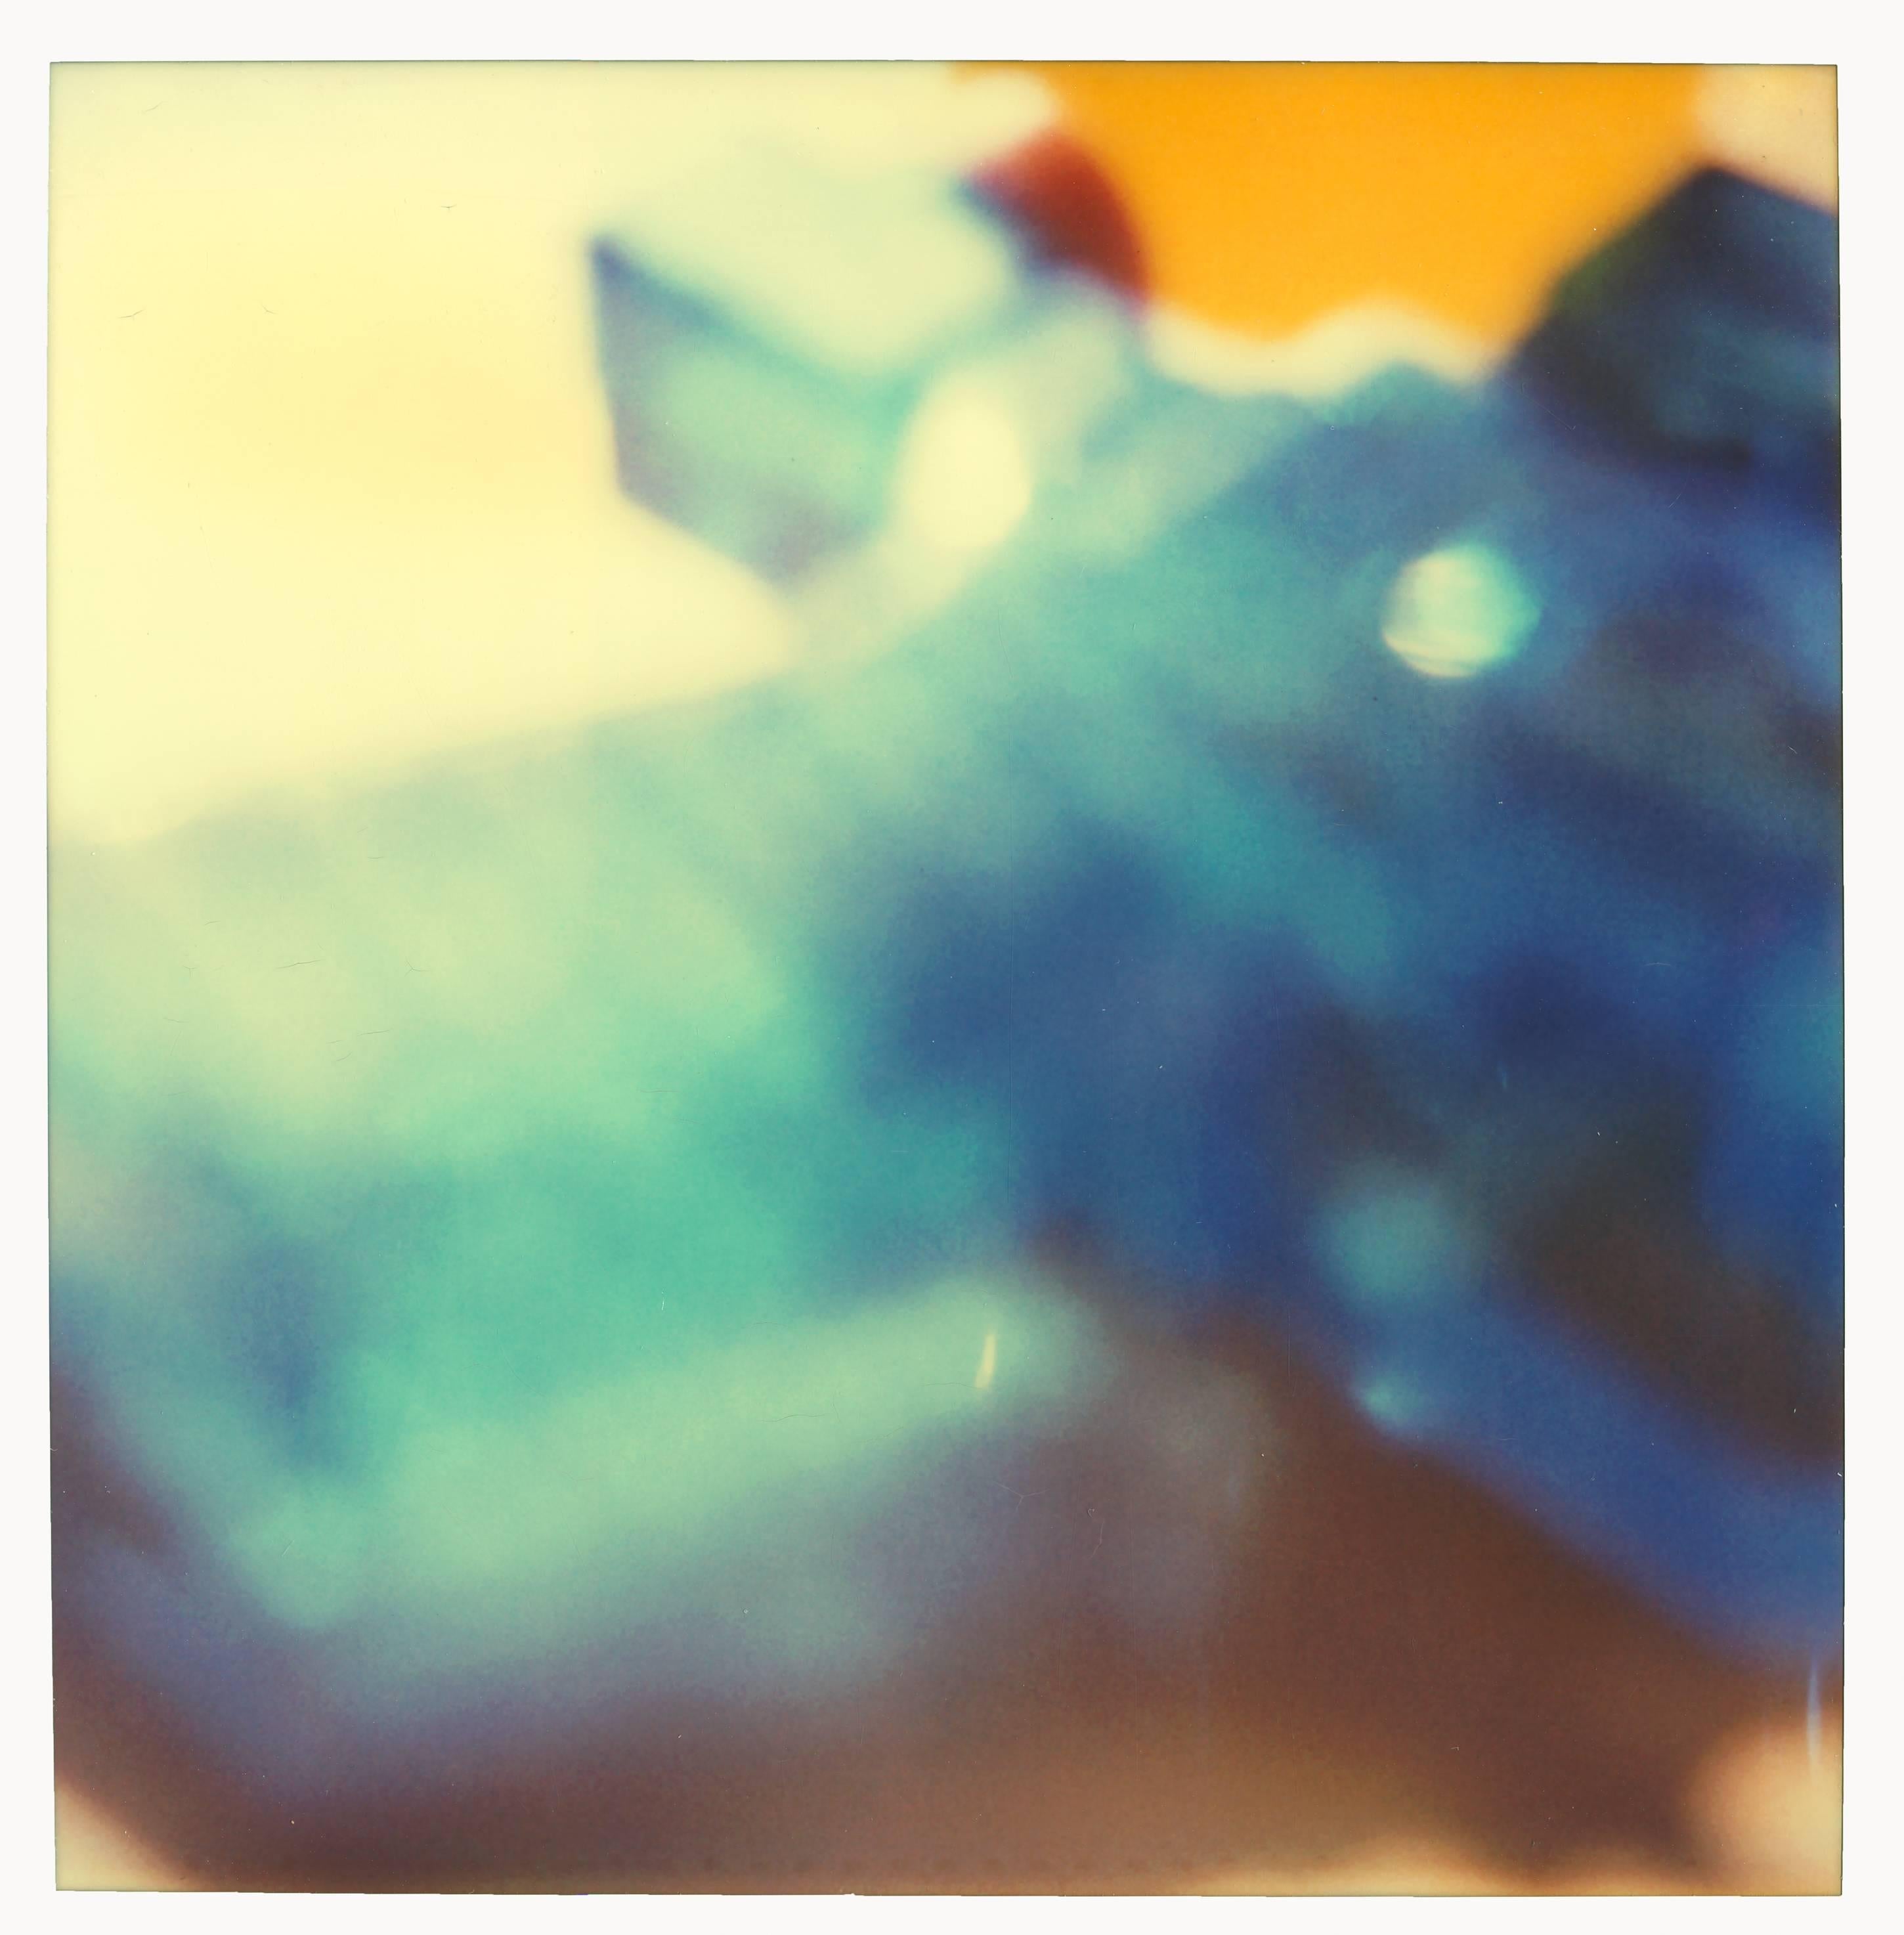 Blue Water Pistol (diptych) - Contemporary, Nude, Polaroid, 21st Century - Photograph by Stefanie Schneider